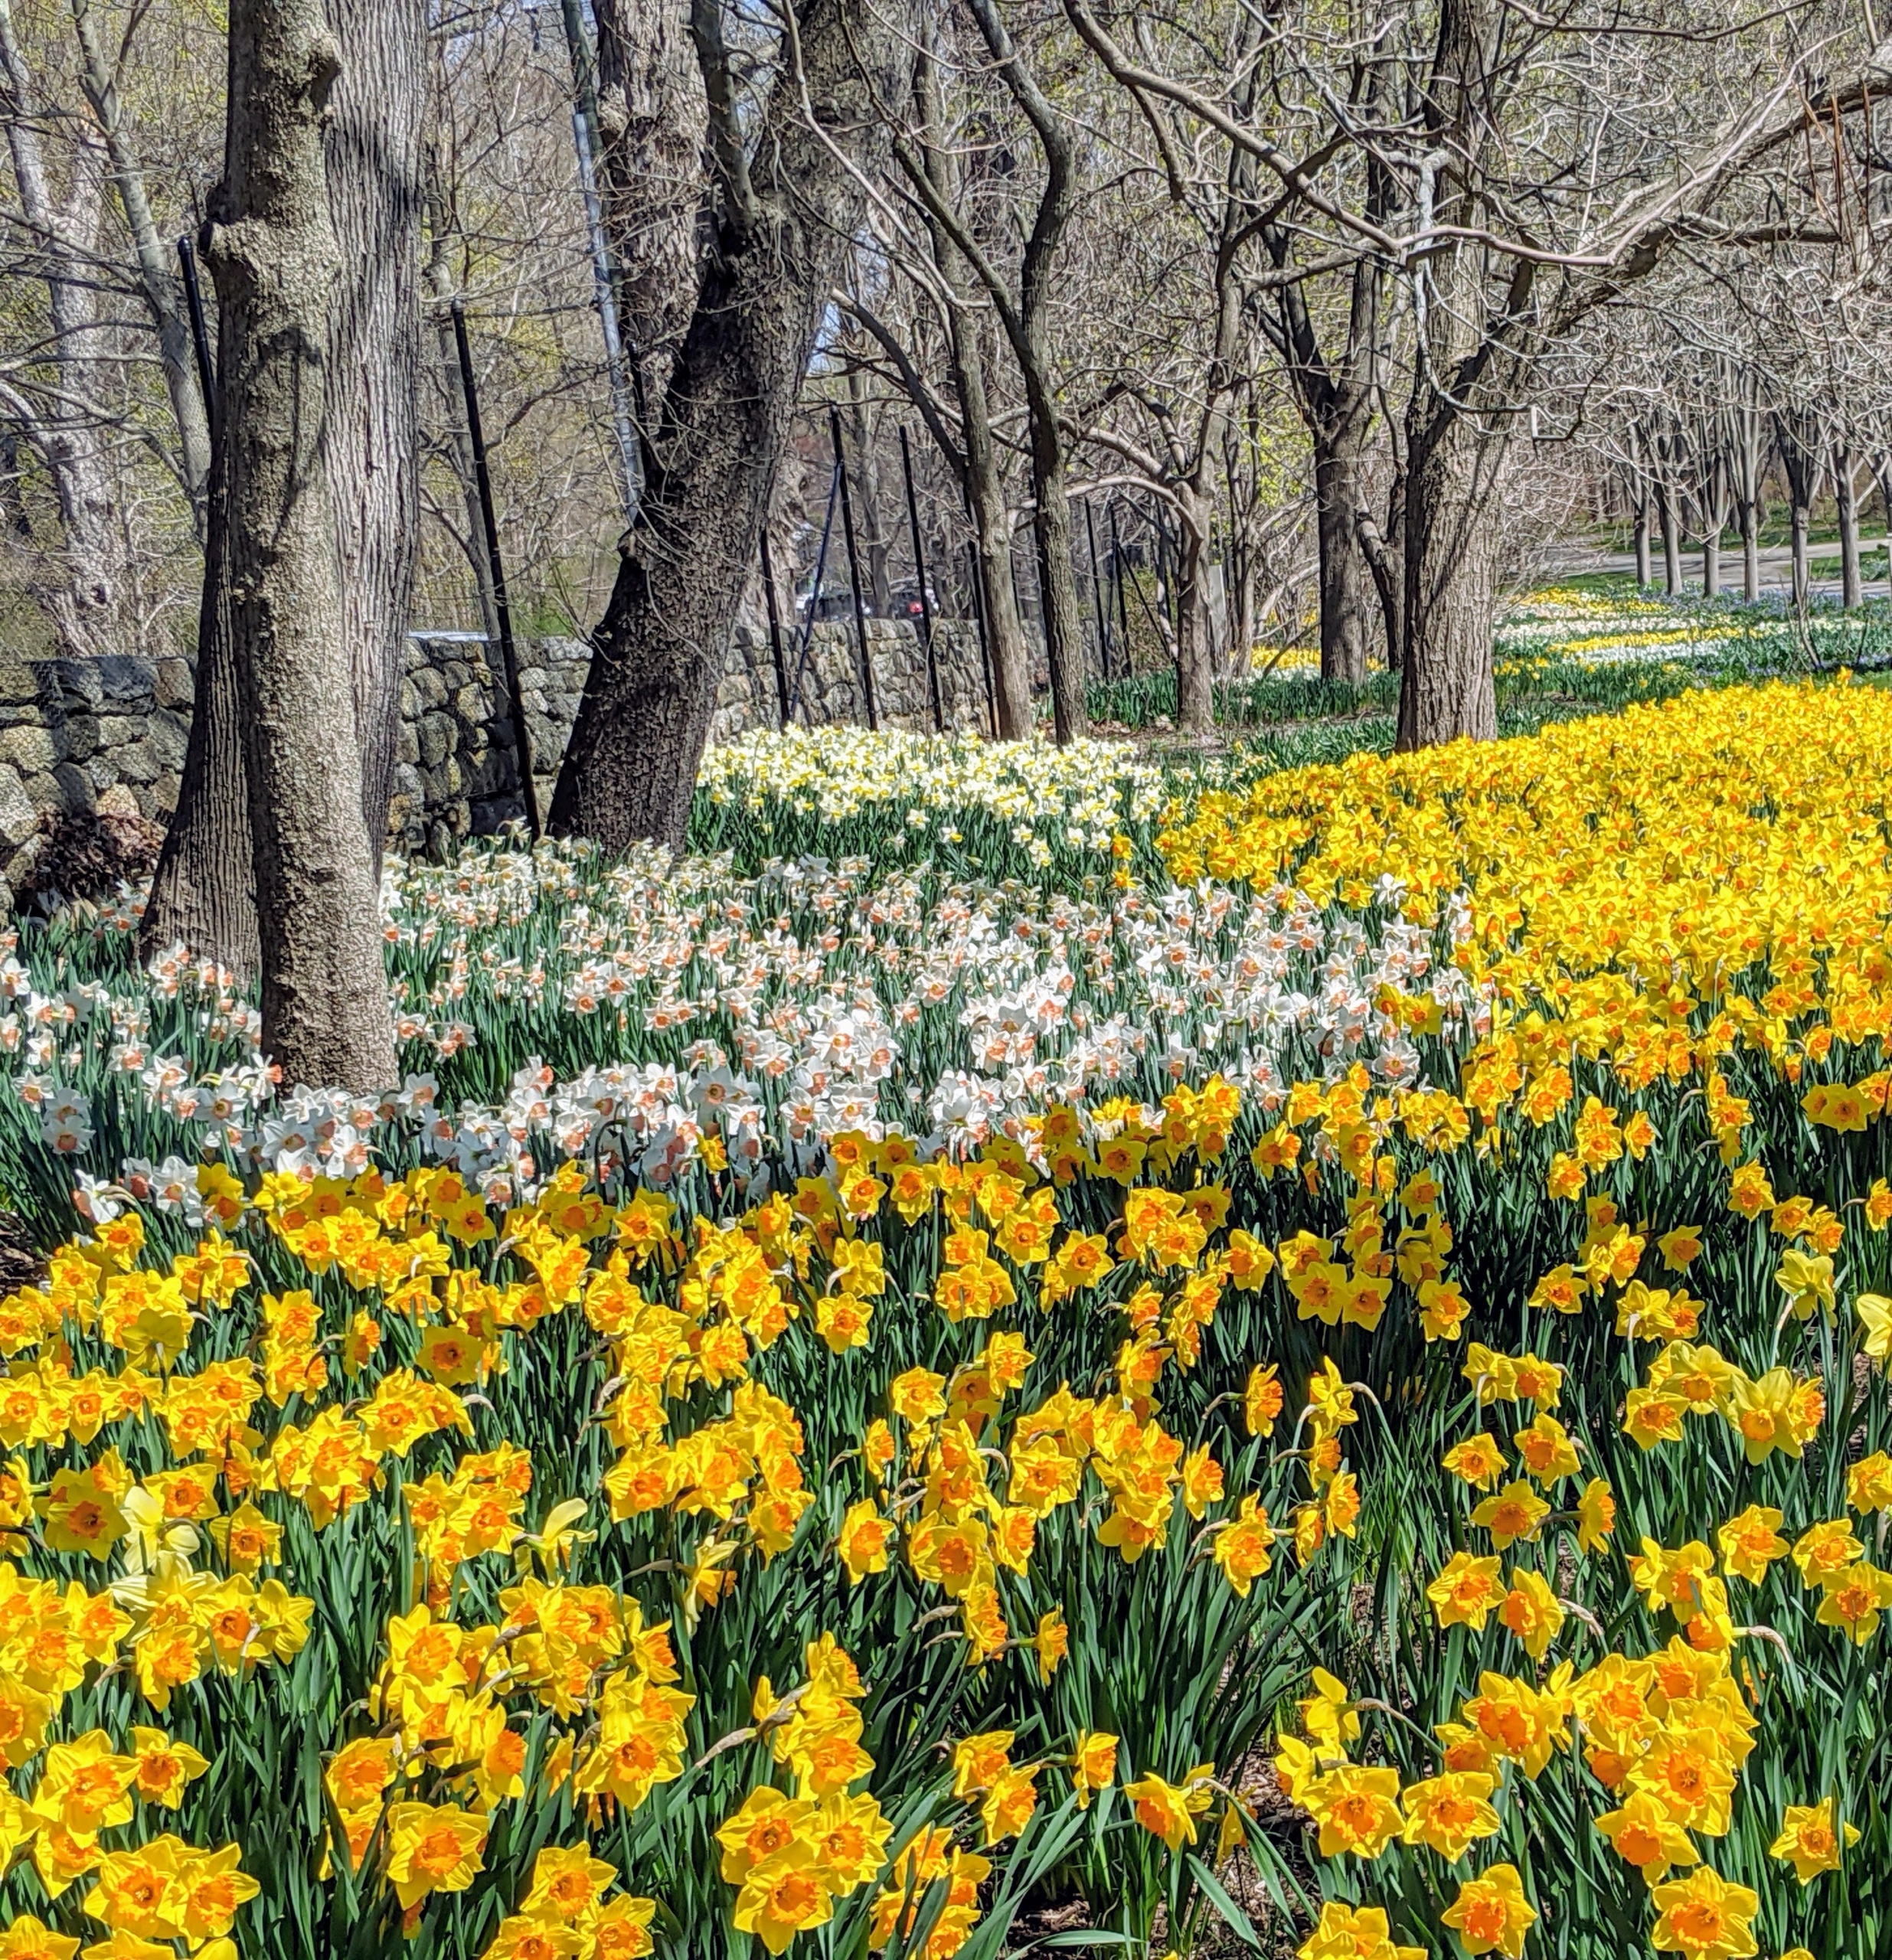 Planting Daffodil Bulbs in My Long Border   The Martha Stewart Blog